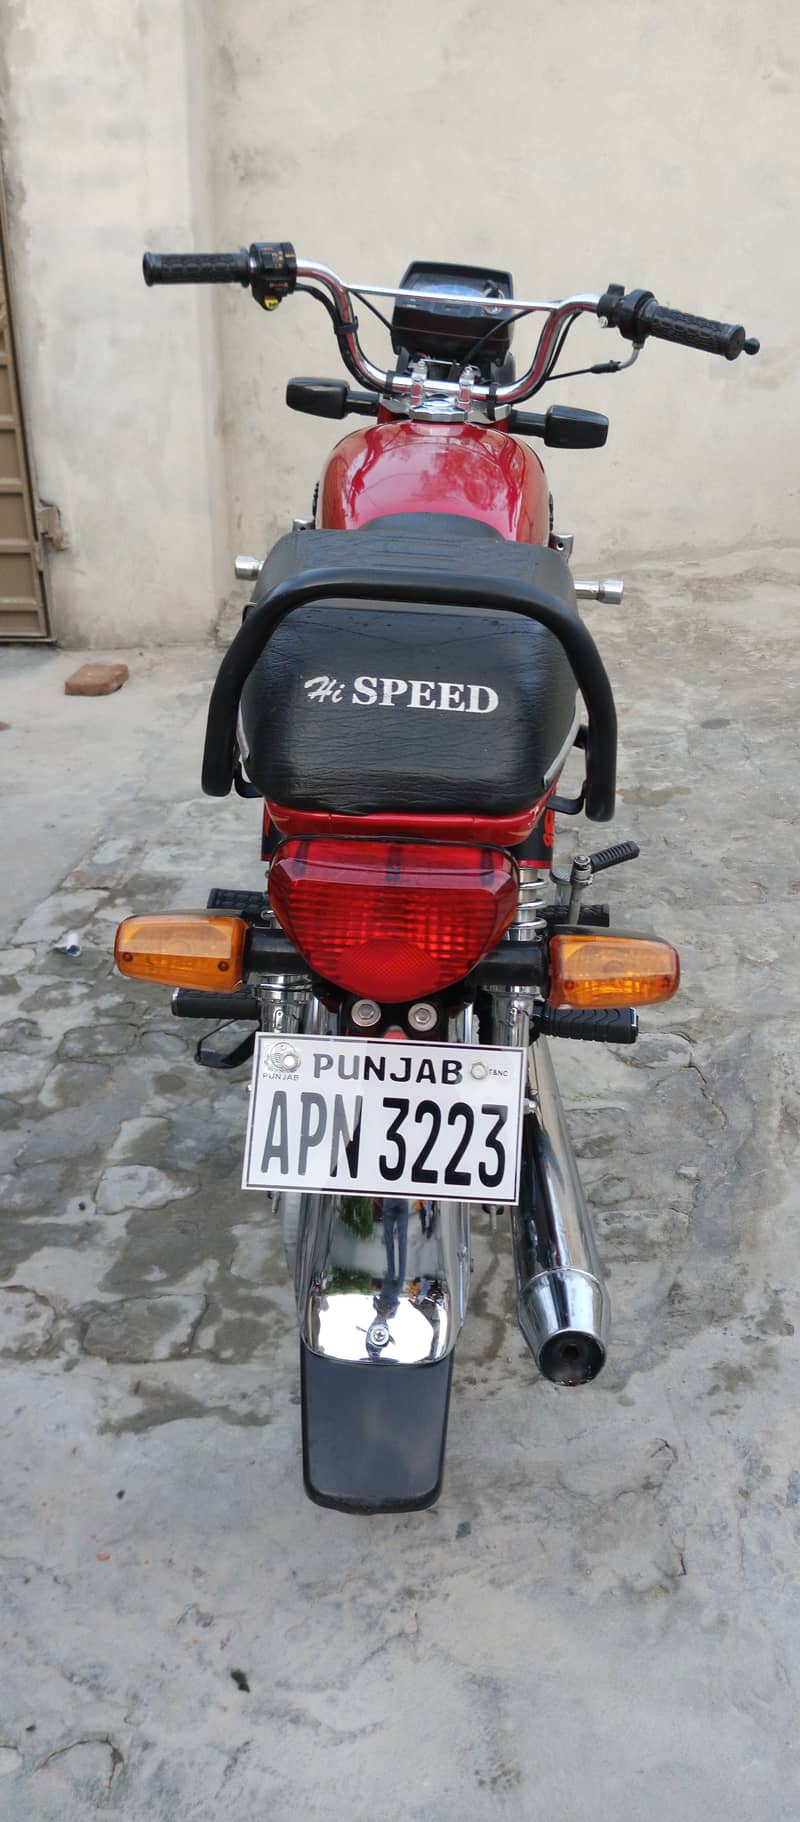 Hi speed bike 2